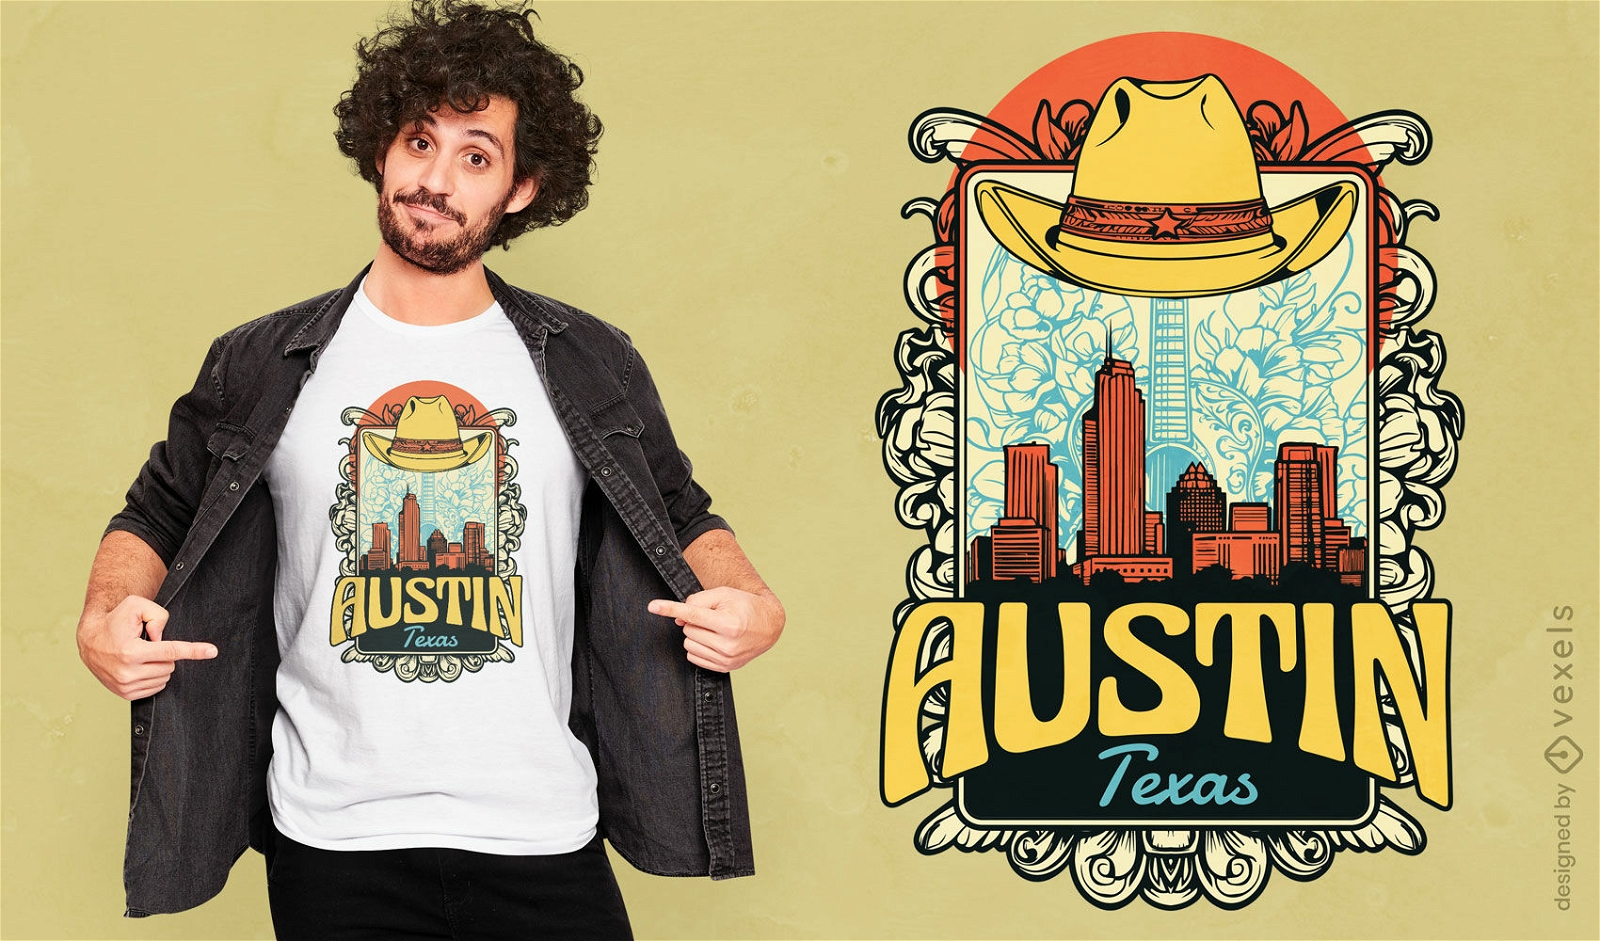 Dise?o de camiseta de Austin Texas.